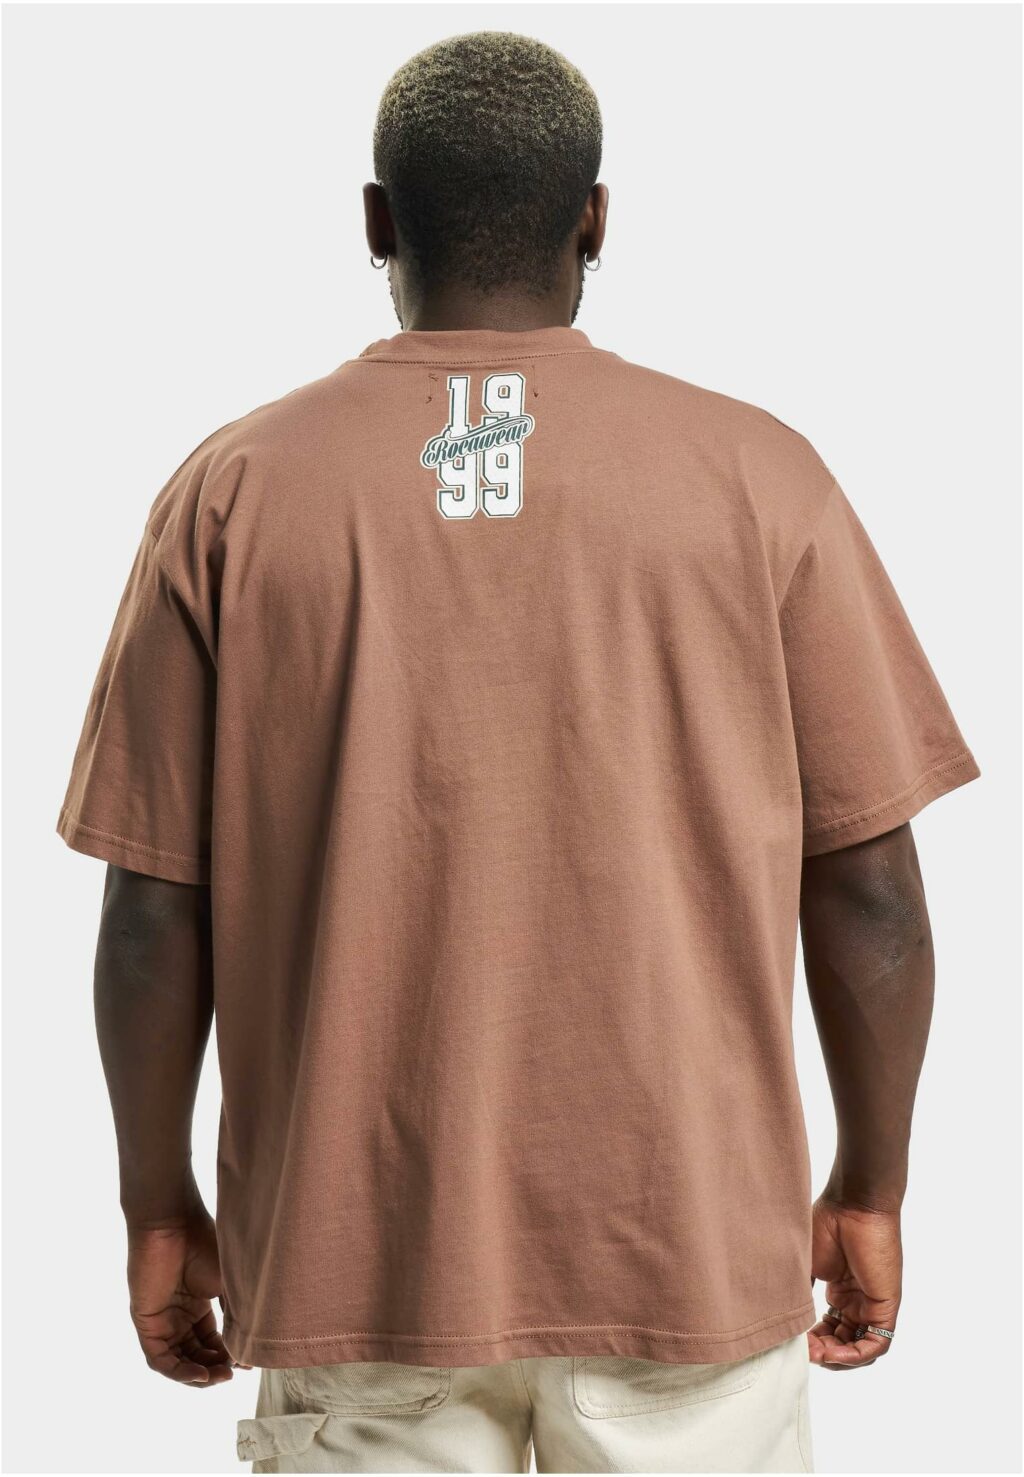 Rocawear Tshirt Luisville brown RWTS093